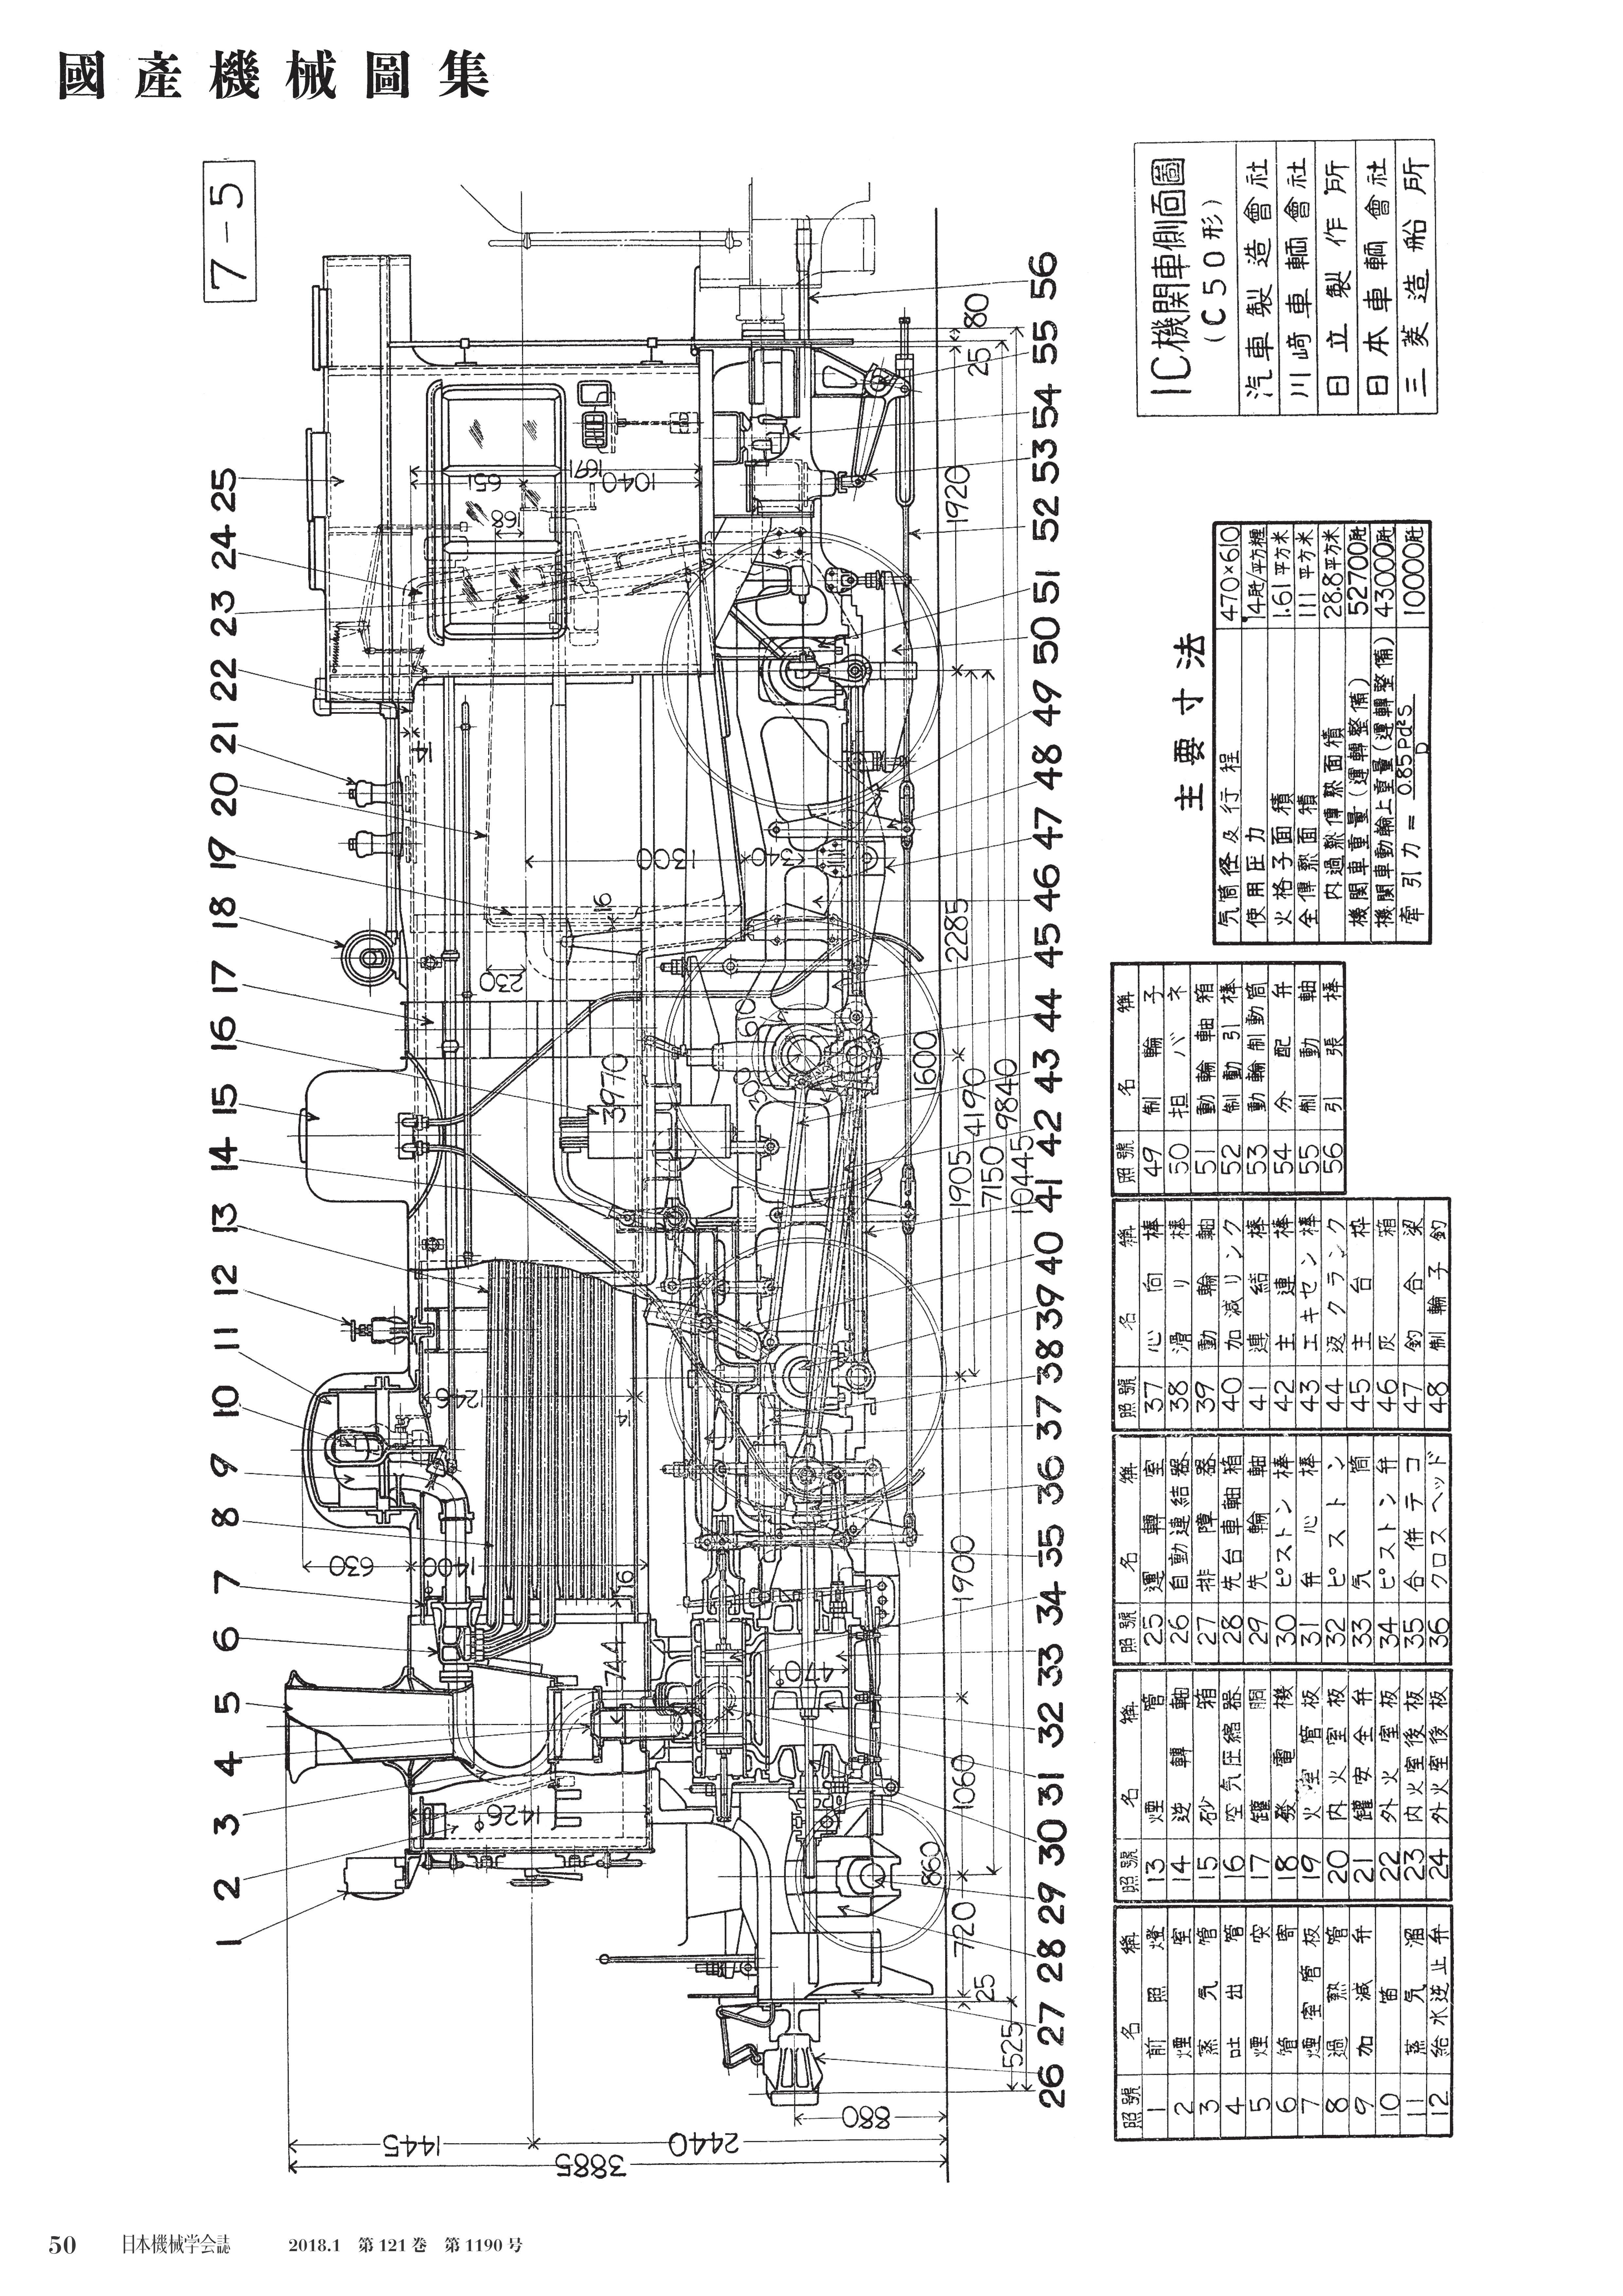 1c 機関車側面図 C50形 日本機械学会誌